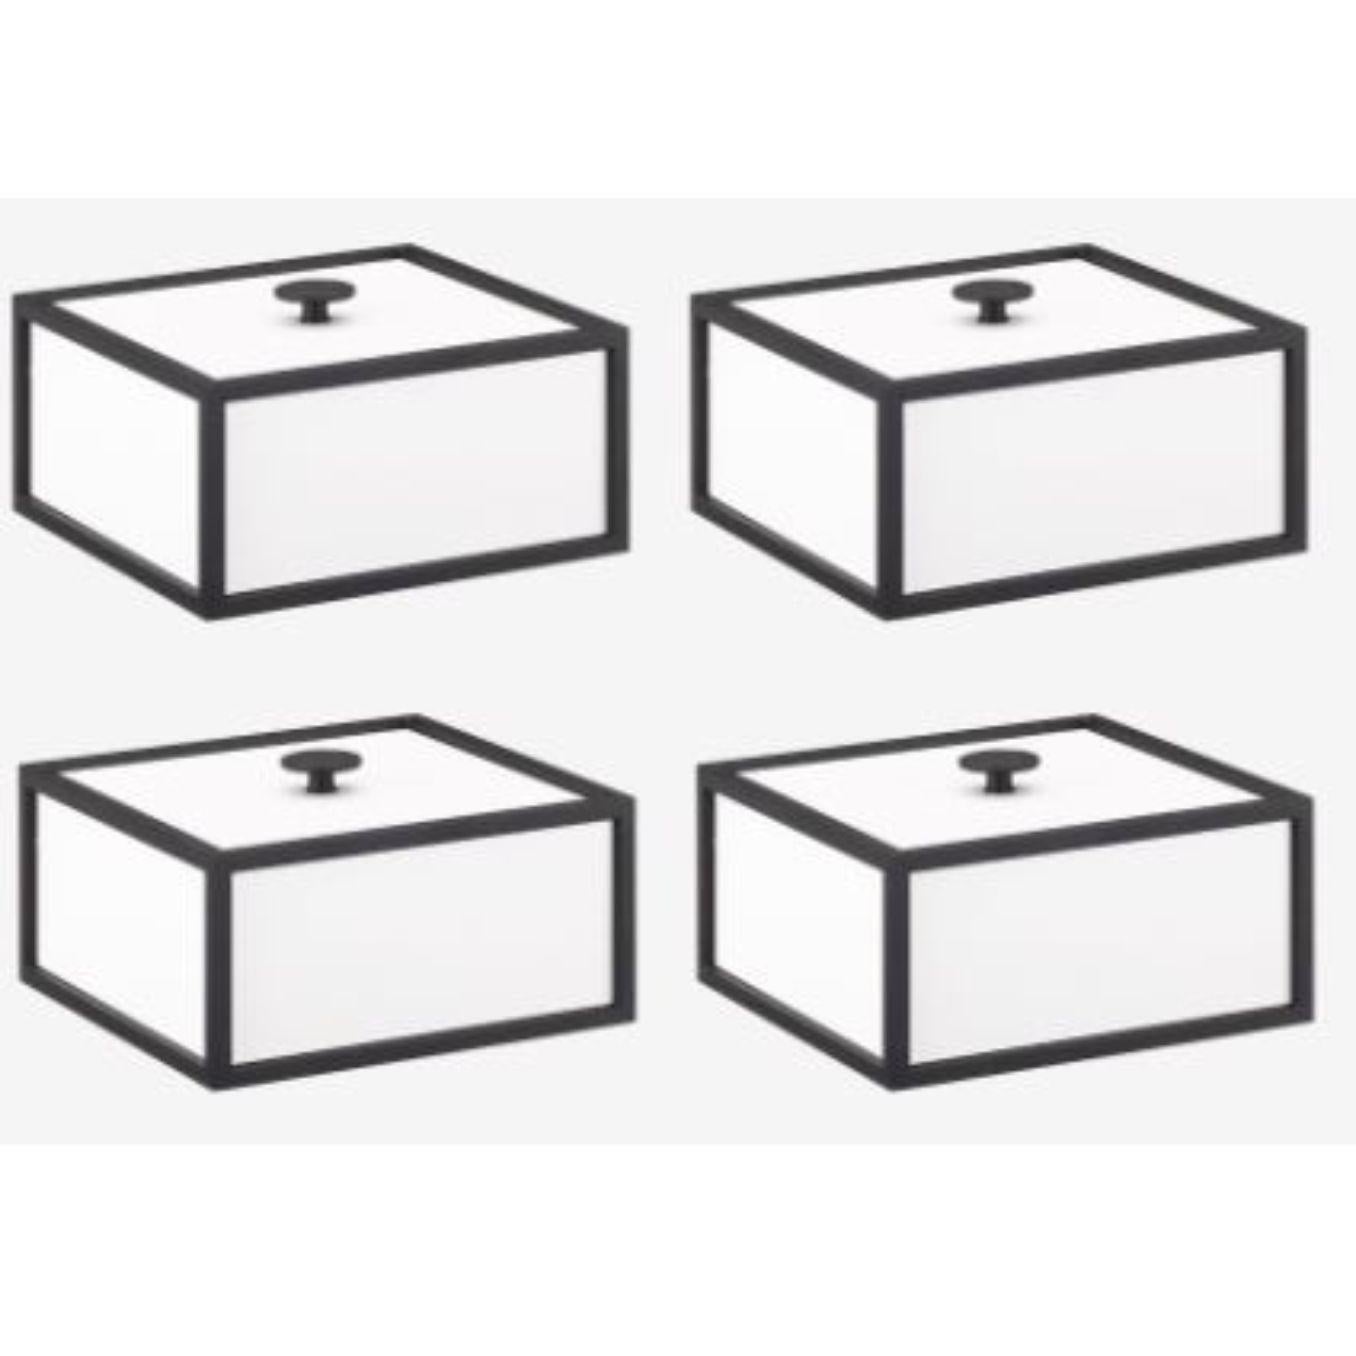 4er-Set weißer Rahmen 14 Box von Lassen
Abmessungen: D 10 x B 10 x H 7 cm 
MATERIALIEN: Finér, Melamin, Melamin, Metall, Furnier
Gewicht: 1.10 kg

Frame Box ist eine quadratische Box in kubistischer Form. Die schlichten Kästen sind von den